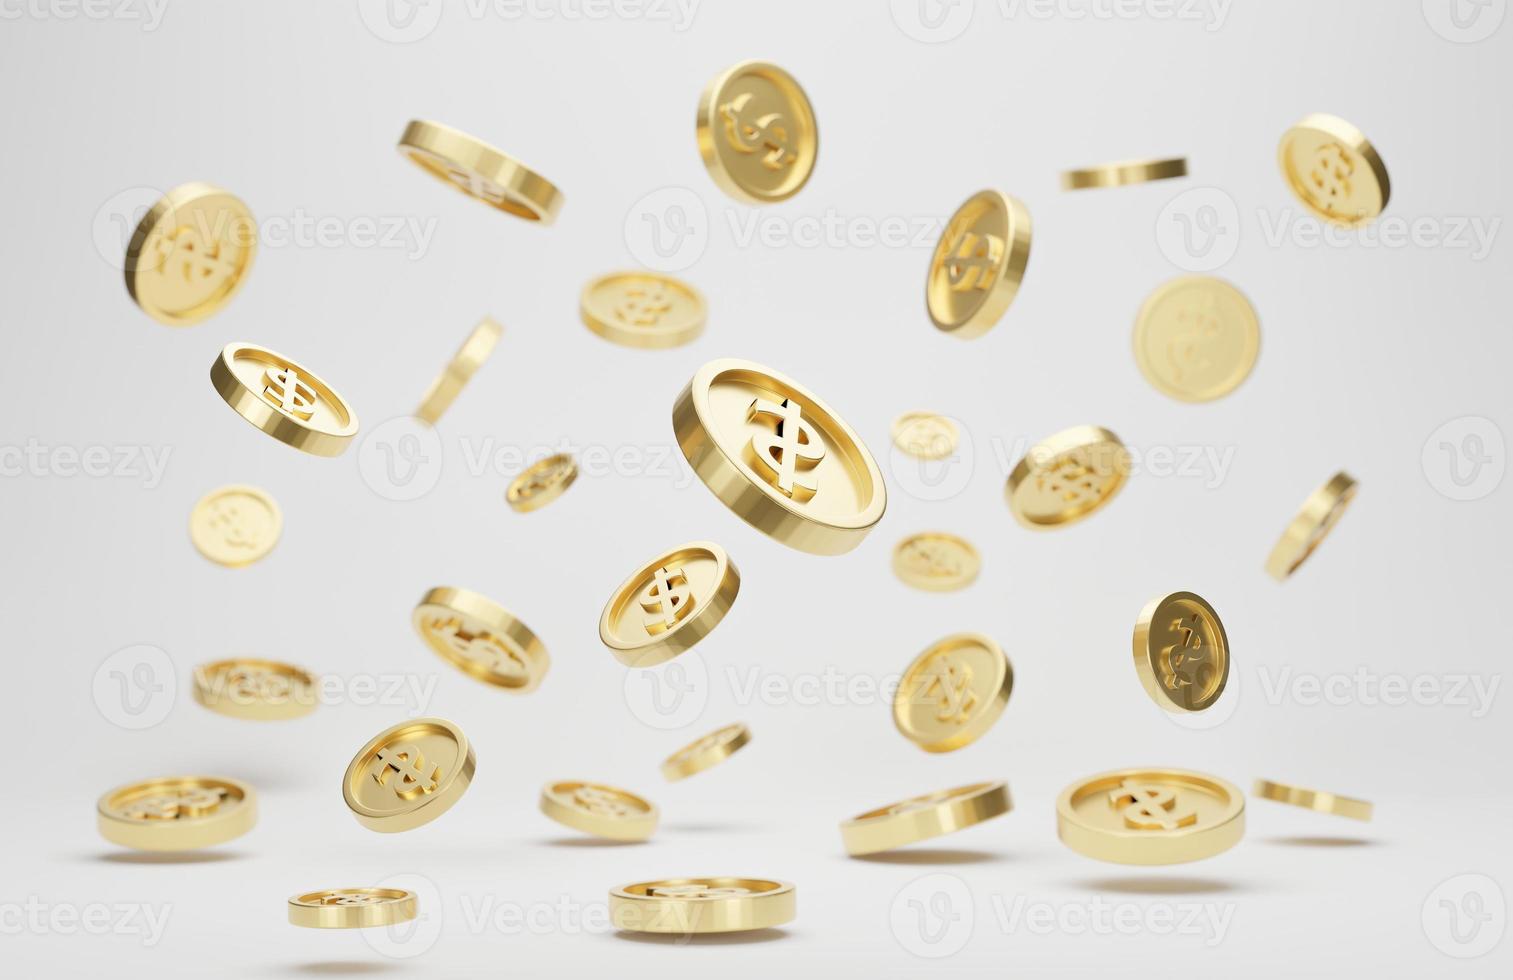 Goldmünzen mit Dollarzeichen, die isoliert auf weißem Hintergrund fallen oder fliegen. Jackpot- oder Casino-Poke-Konzept. 3D-Rendering. foto